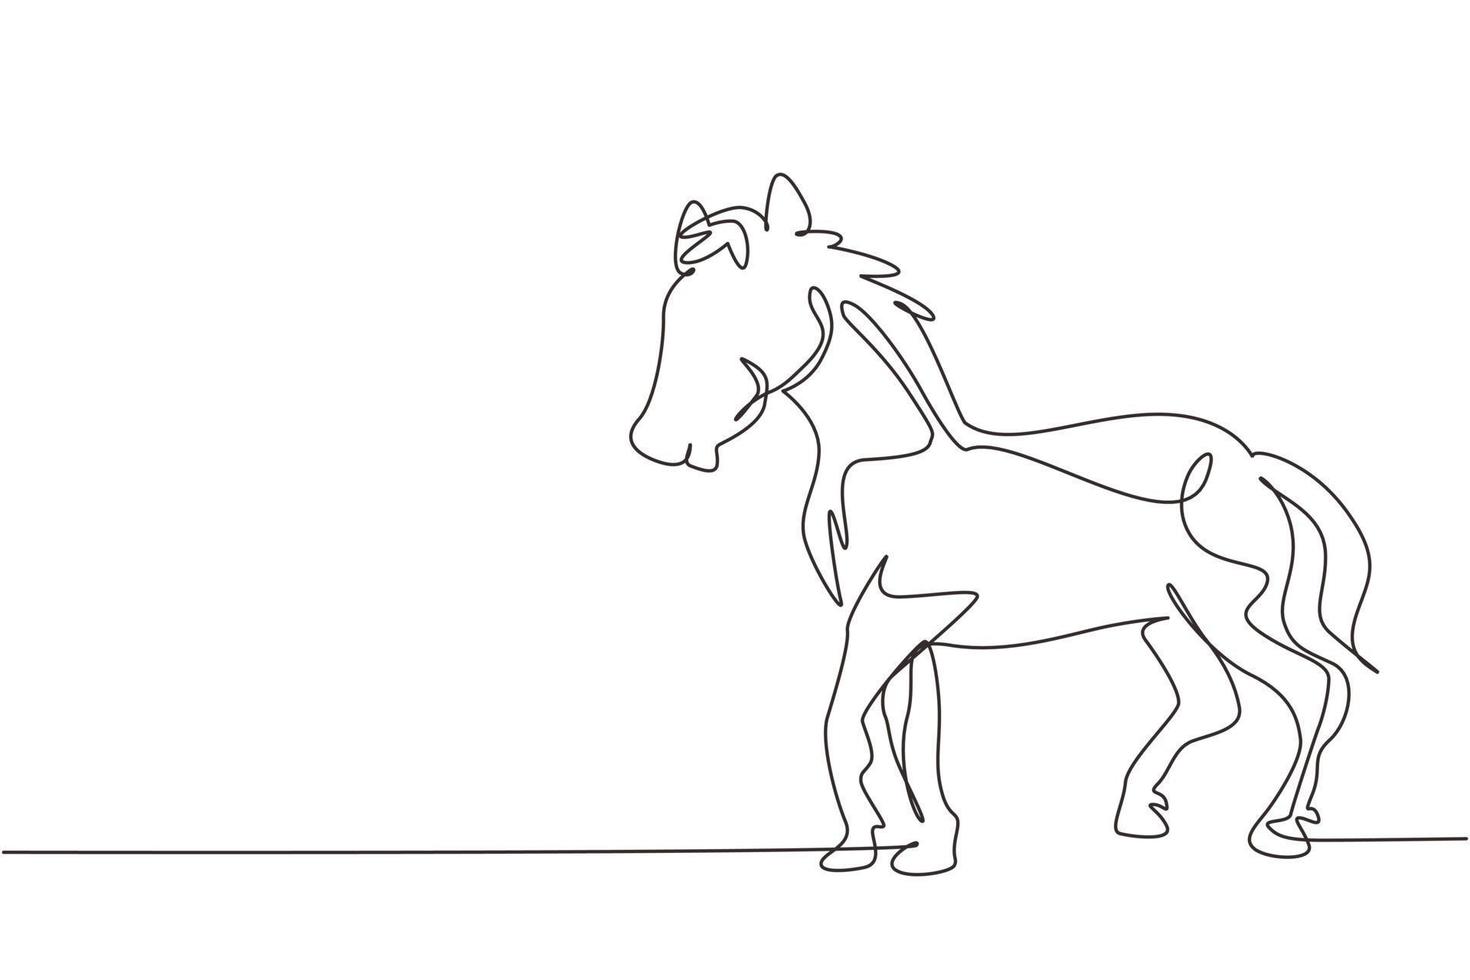 un'unica linea continua che disegna un orgoglioso cavallo bianco che cammina con grazia con lo zoccolo anteriore in avanti. il mustang selvaggio galoppa nella natura libera. cavallo addomesticato. illustrazione vettoriale di un disegno grafico a una linea